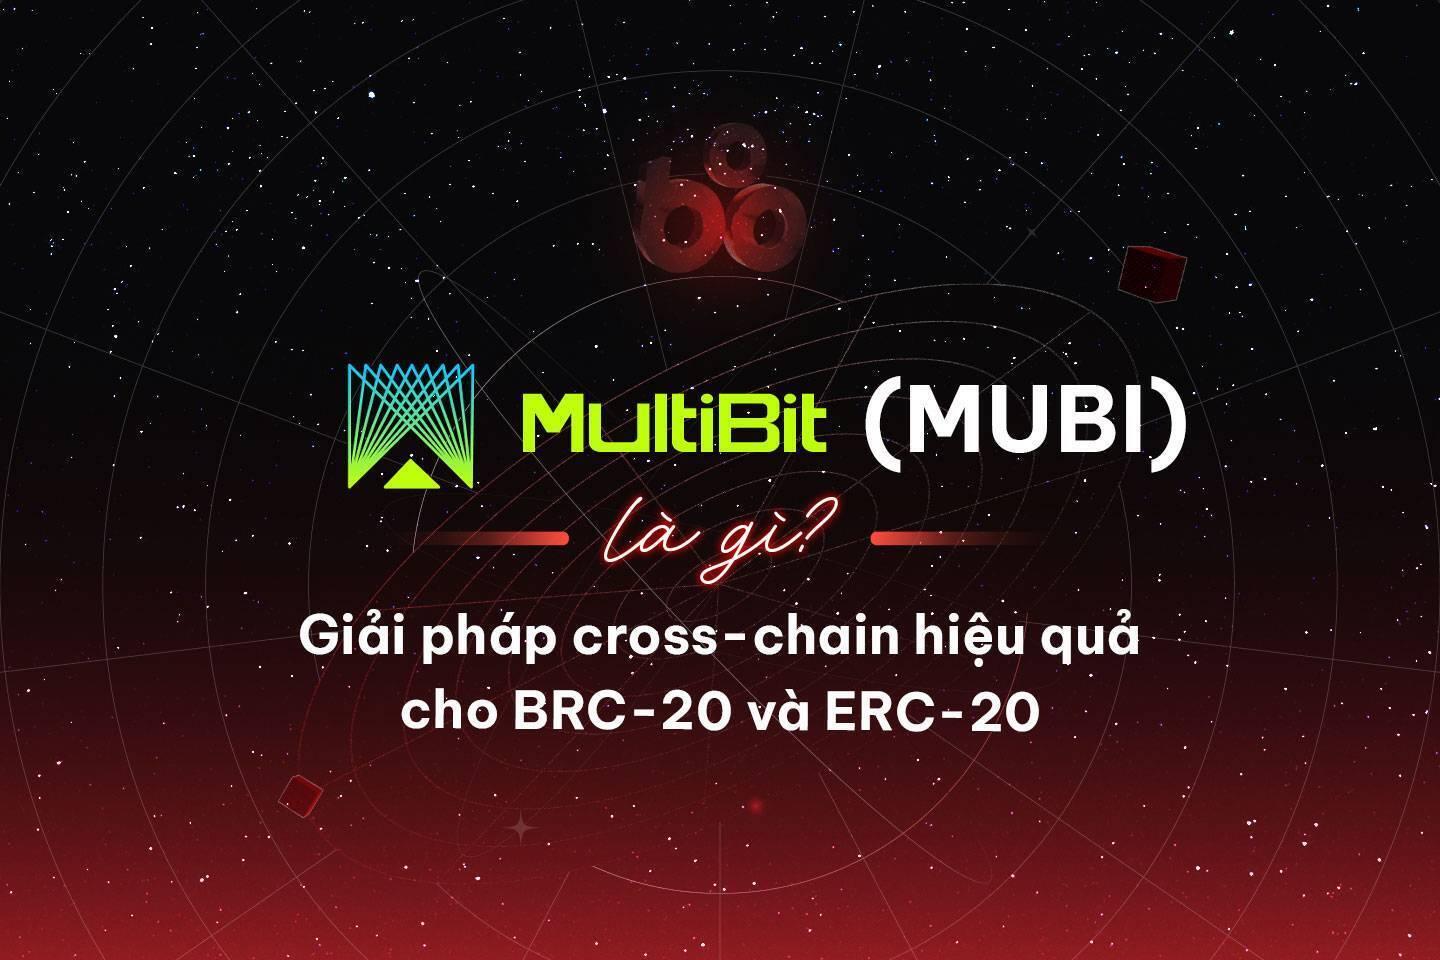 multibit-mubi-la-gi-giai-phap-cross-chain-hieu-qua-cho-brc-20-va-erc-20